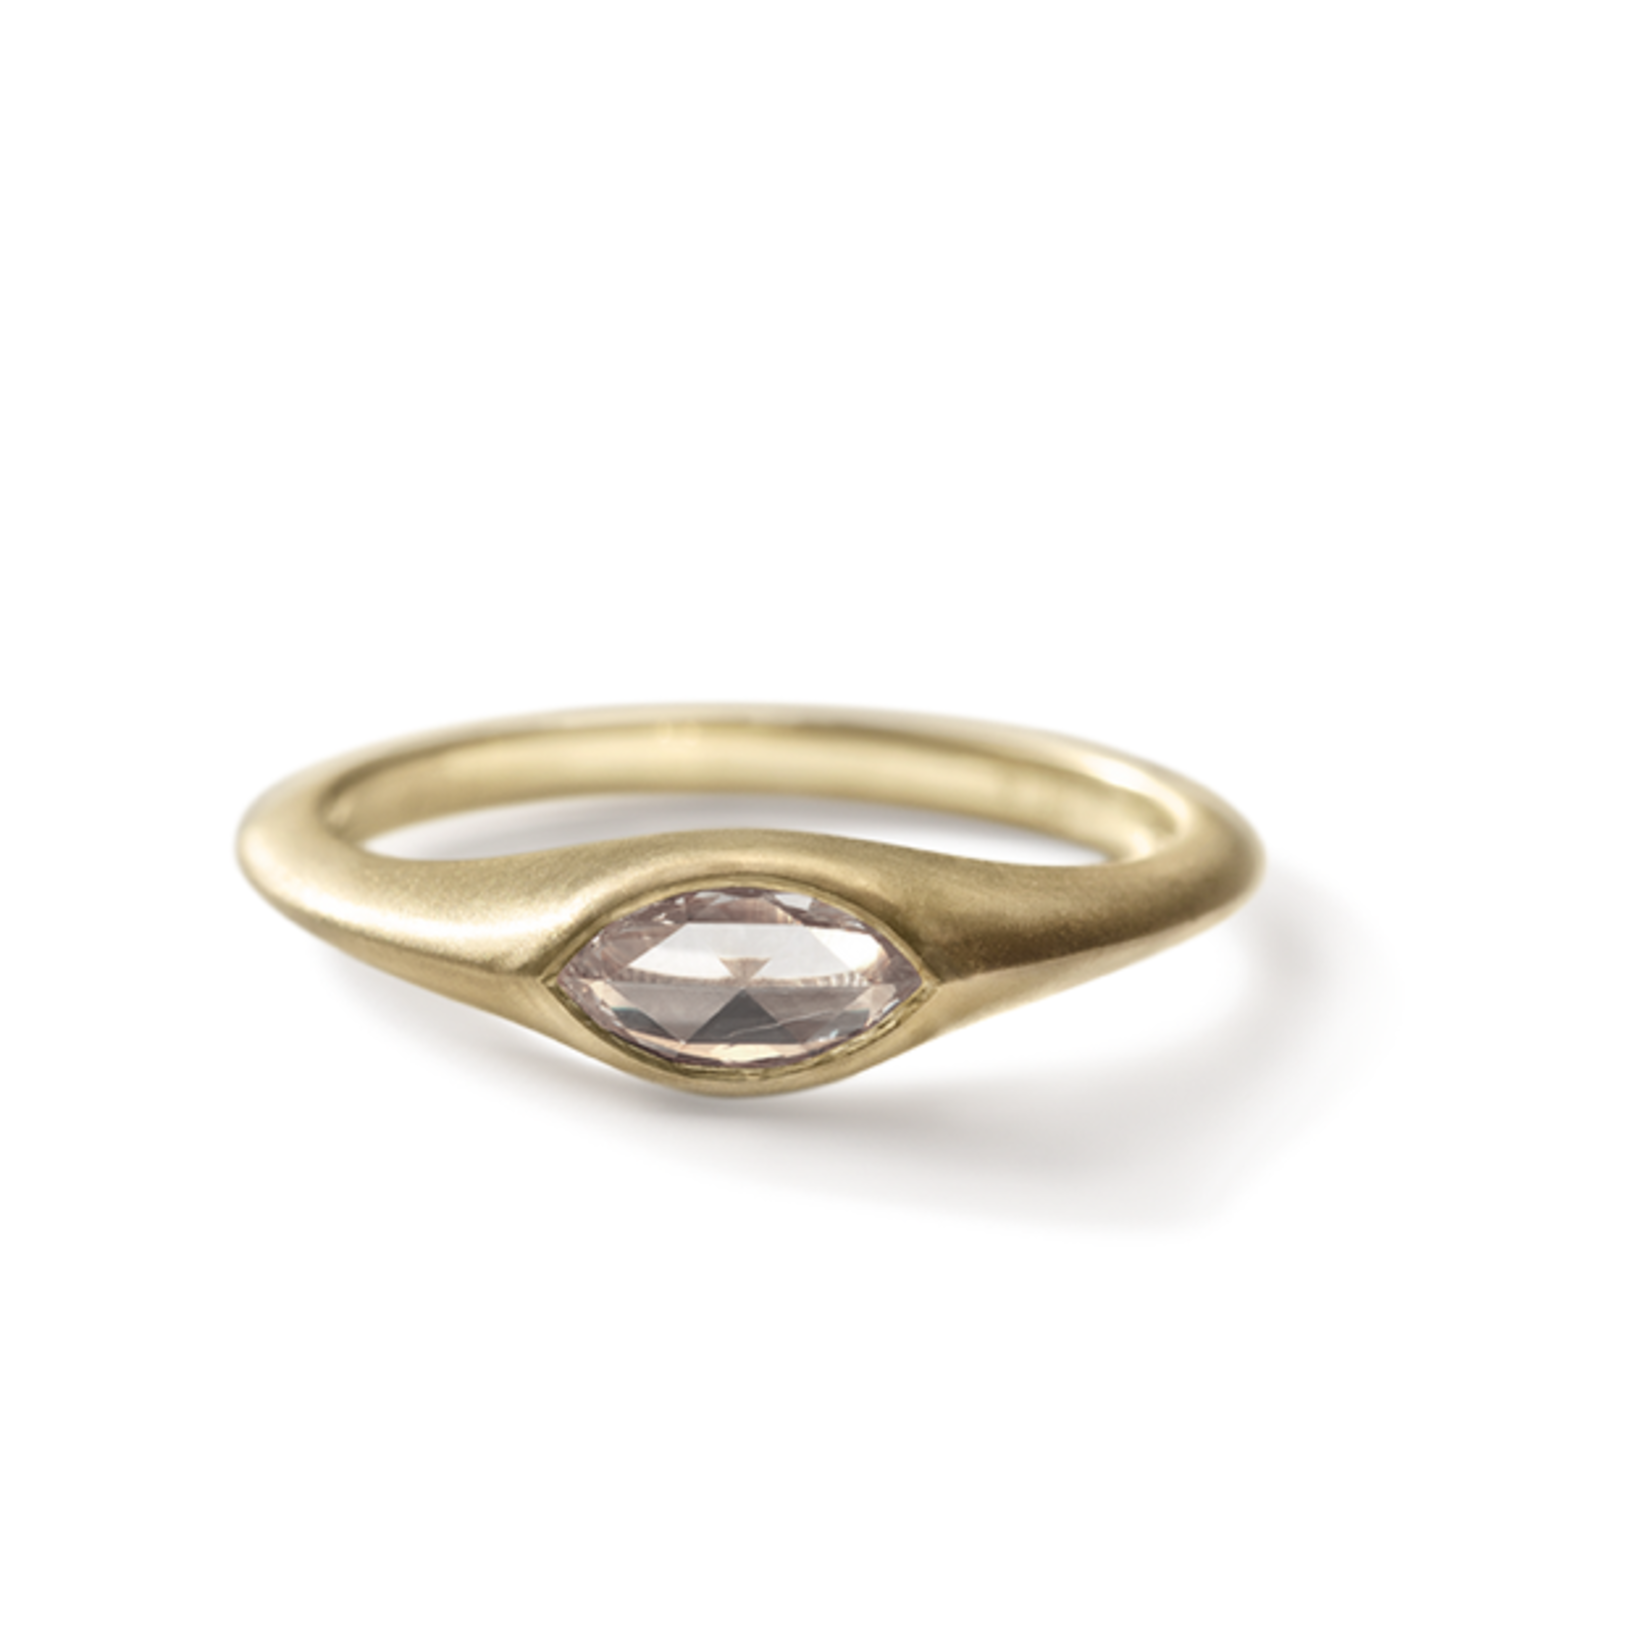 ILA 14KY Prevalence Diamond Ring-Size 6.5